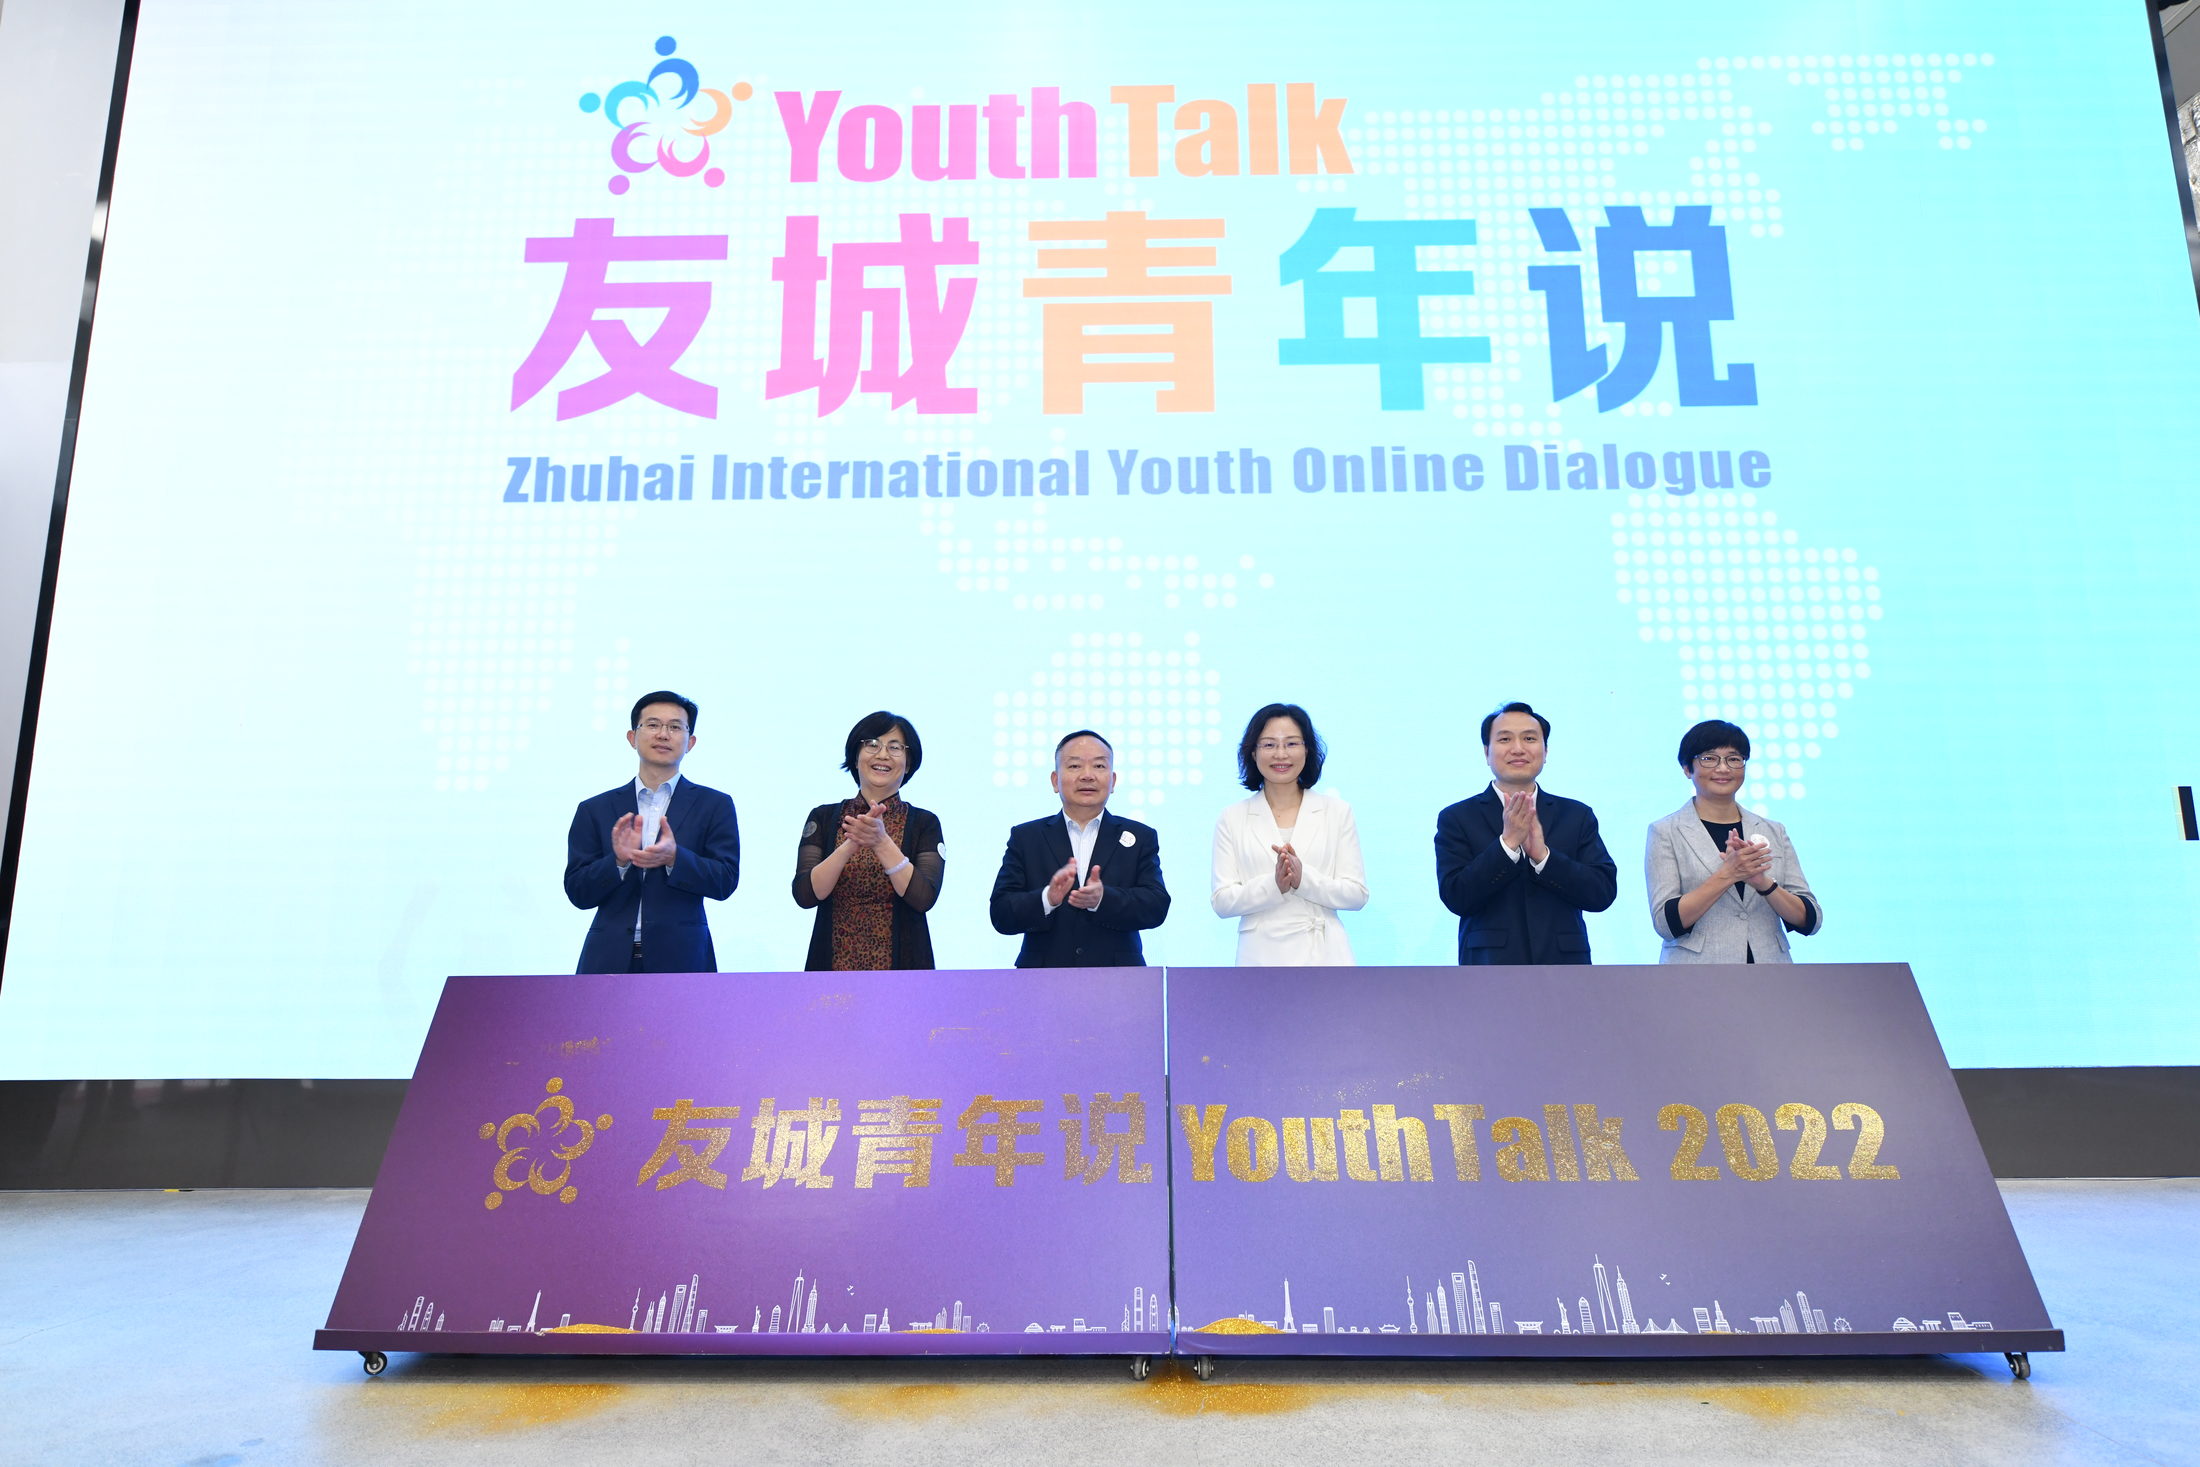 Eröffnung der Online-Veranstaltung „Youth talk - Zhuhai International Youth Online Dialogue 2022. (Wird bei Klick vergrößert)